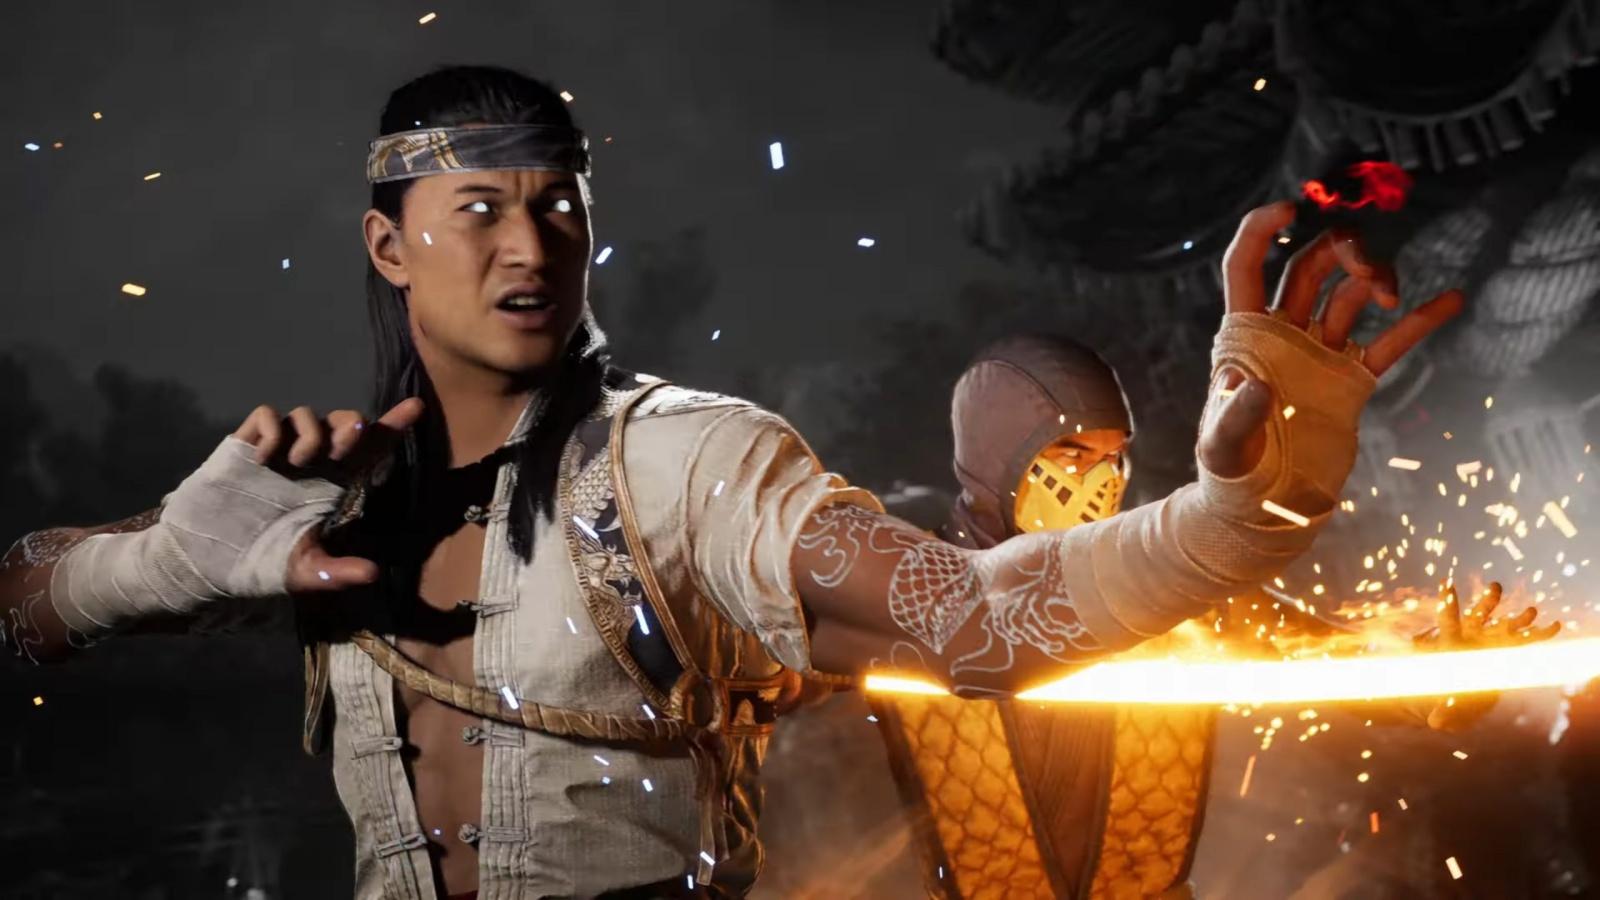 Ed Boon comenta sobre o Fatality de Liu Kang no primeiro Mortal Kombat -  PSX Brasil